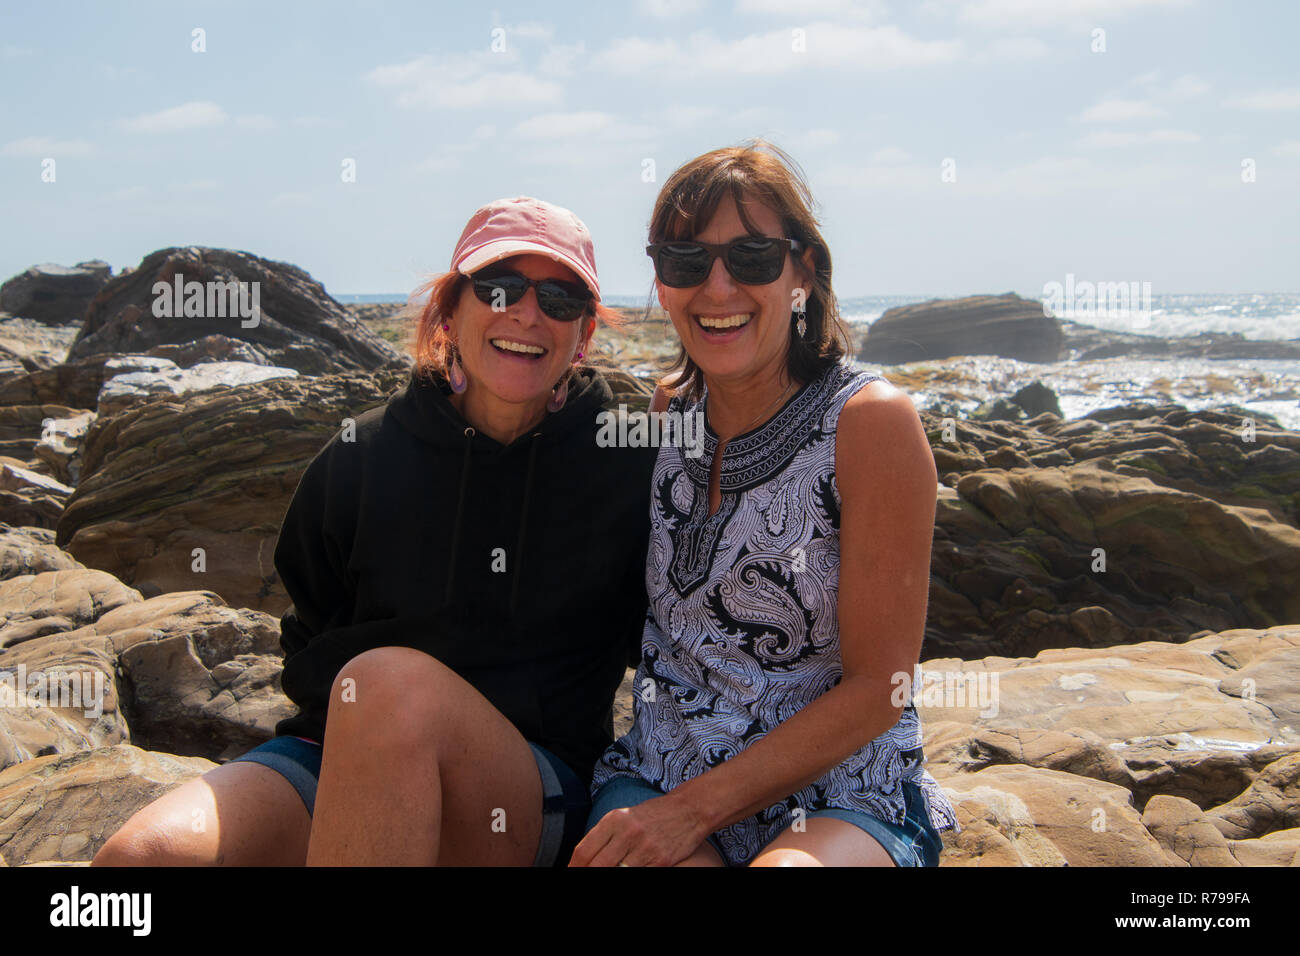 Dos mujeres caucásicas mujer sonriente baby boomers sentados juntos en las rocas a la orilla del océano Foto de stock